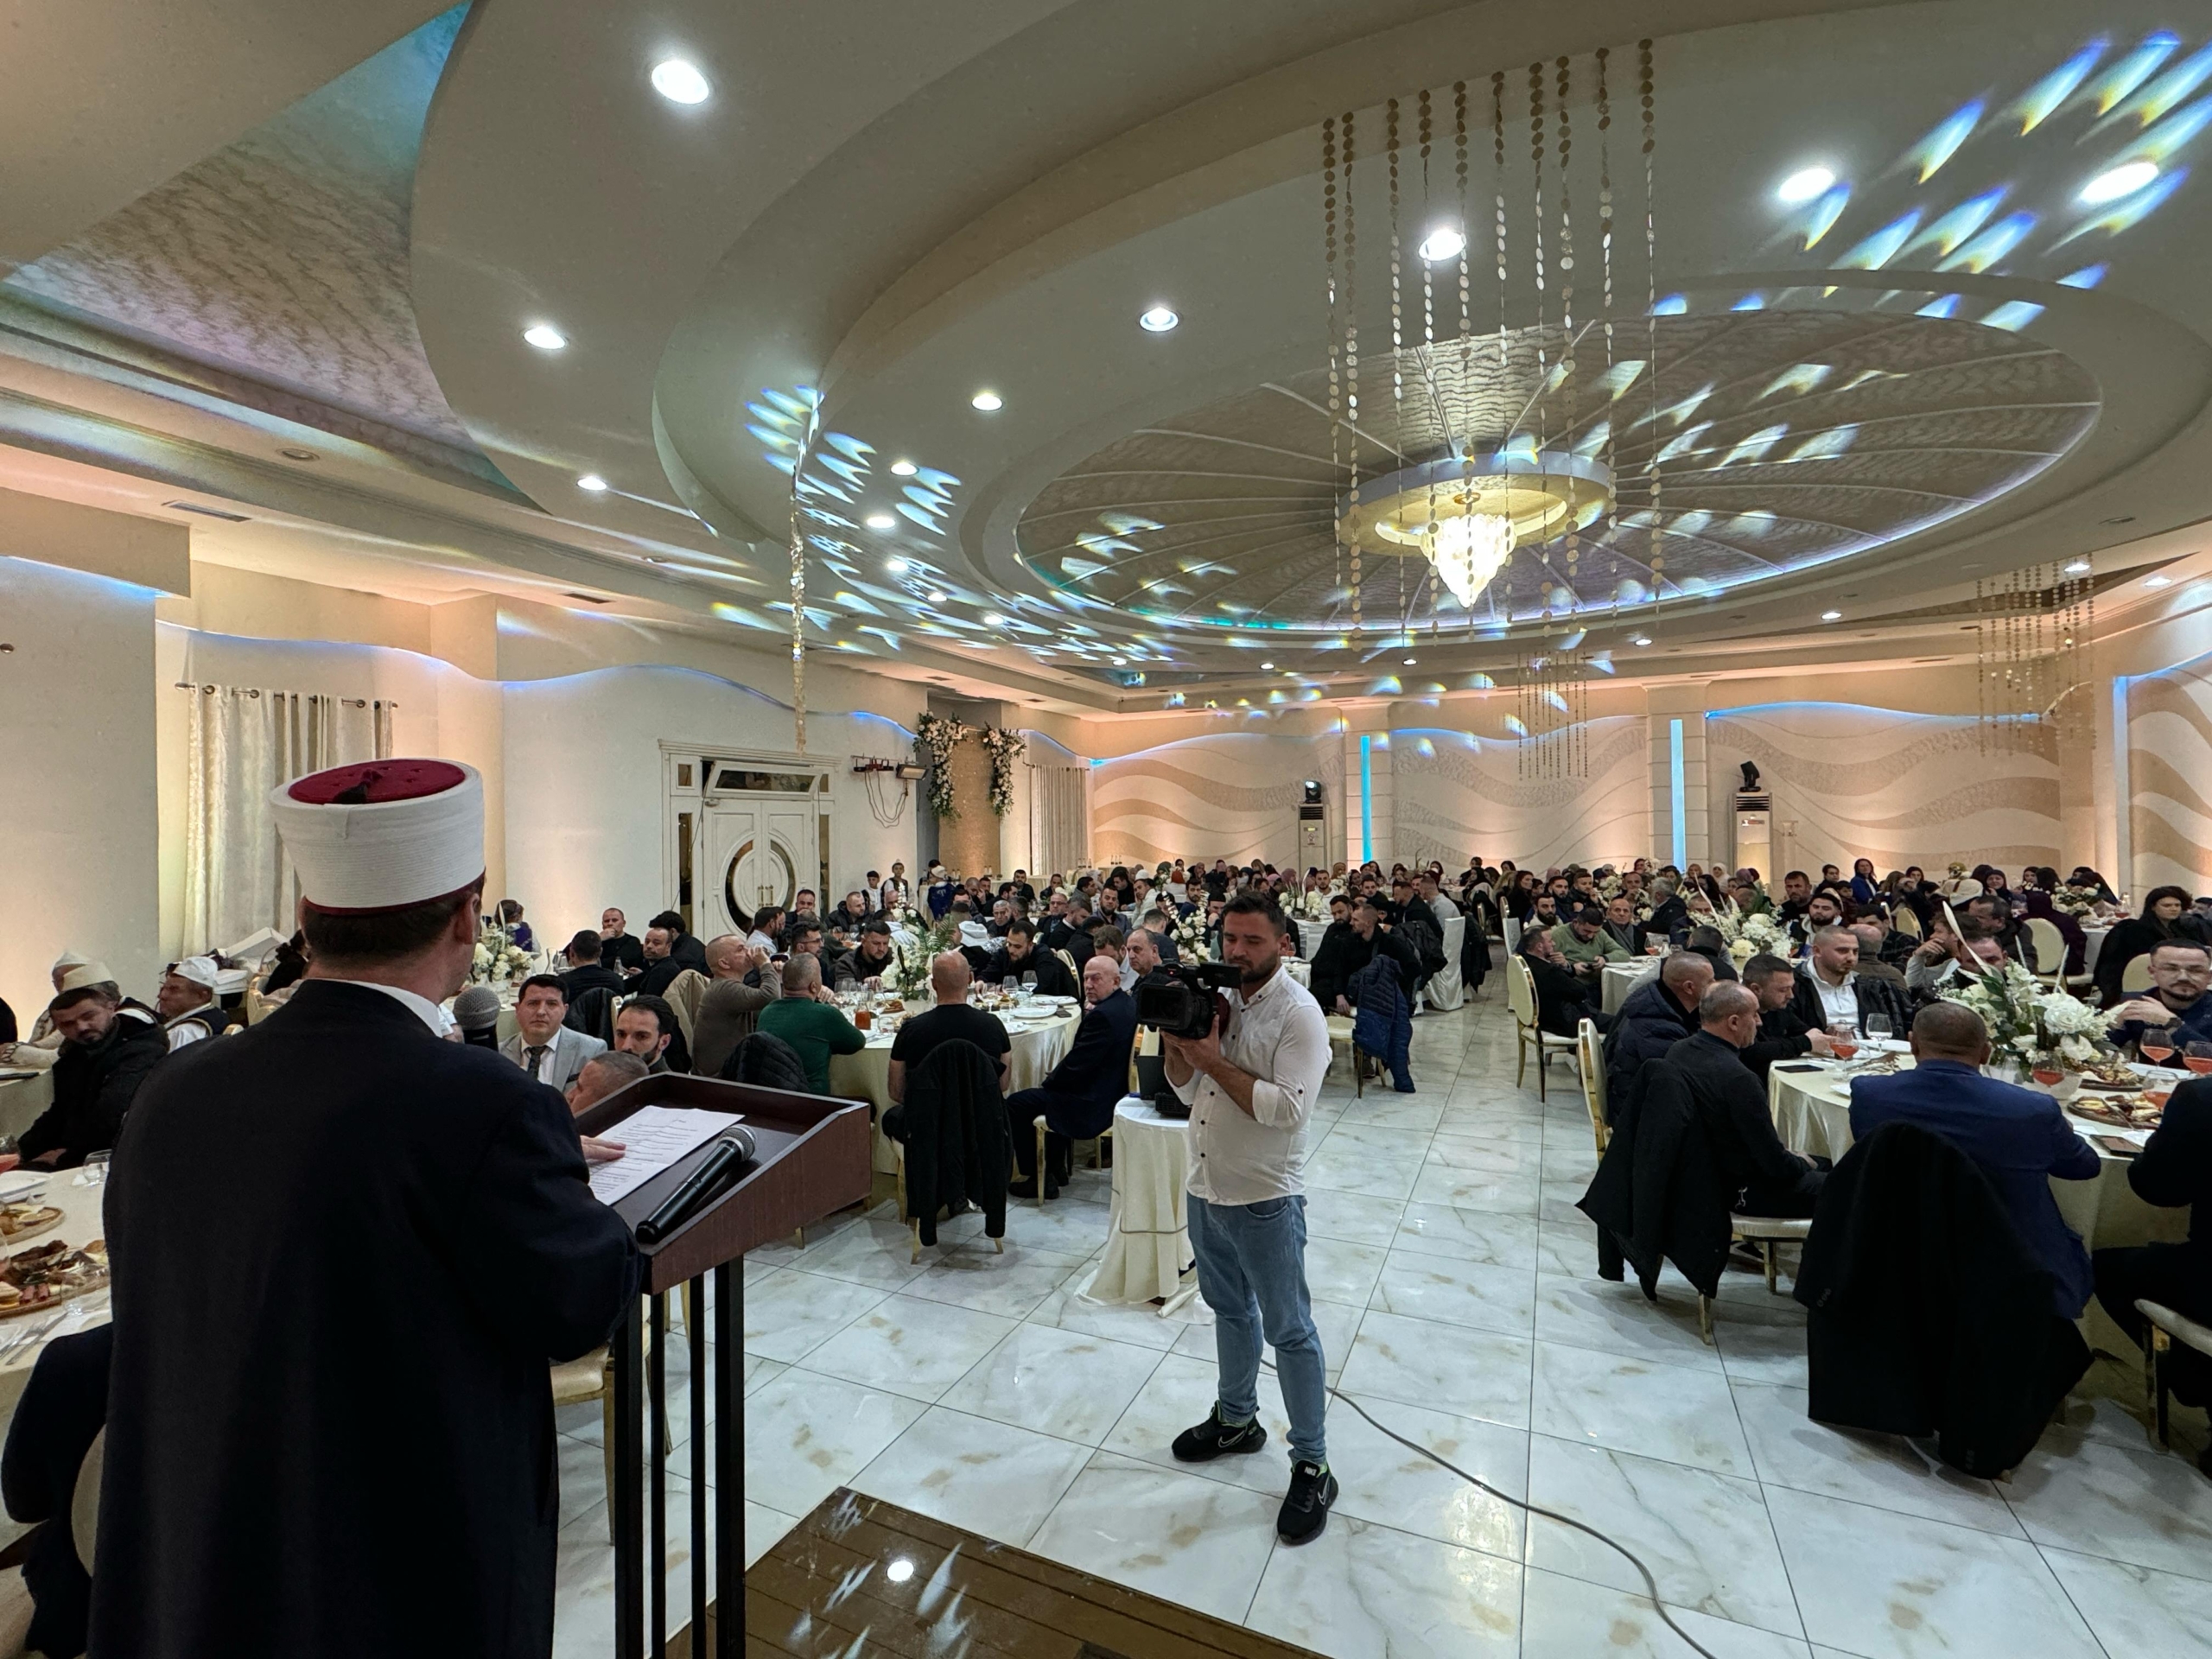 Zhvillohet mbrëmja fetare kushtuar muajit të Ramazanit në Berat